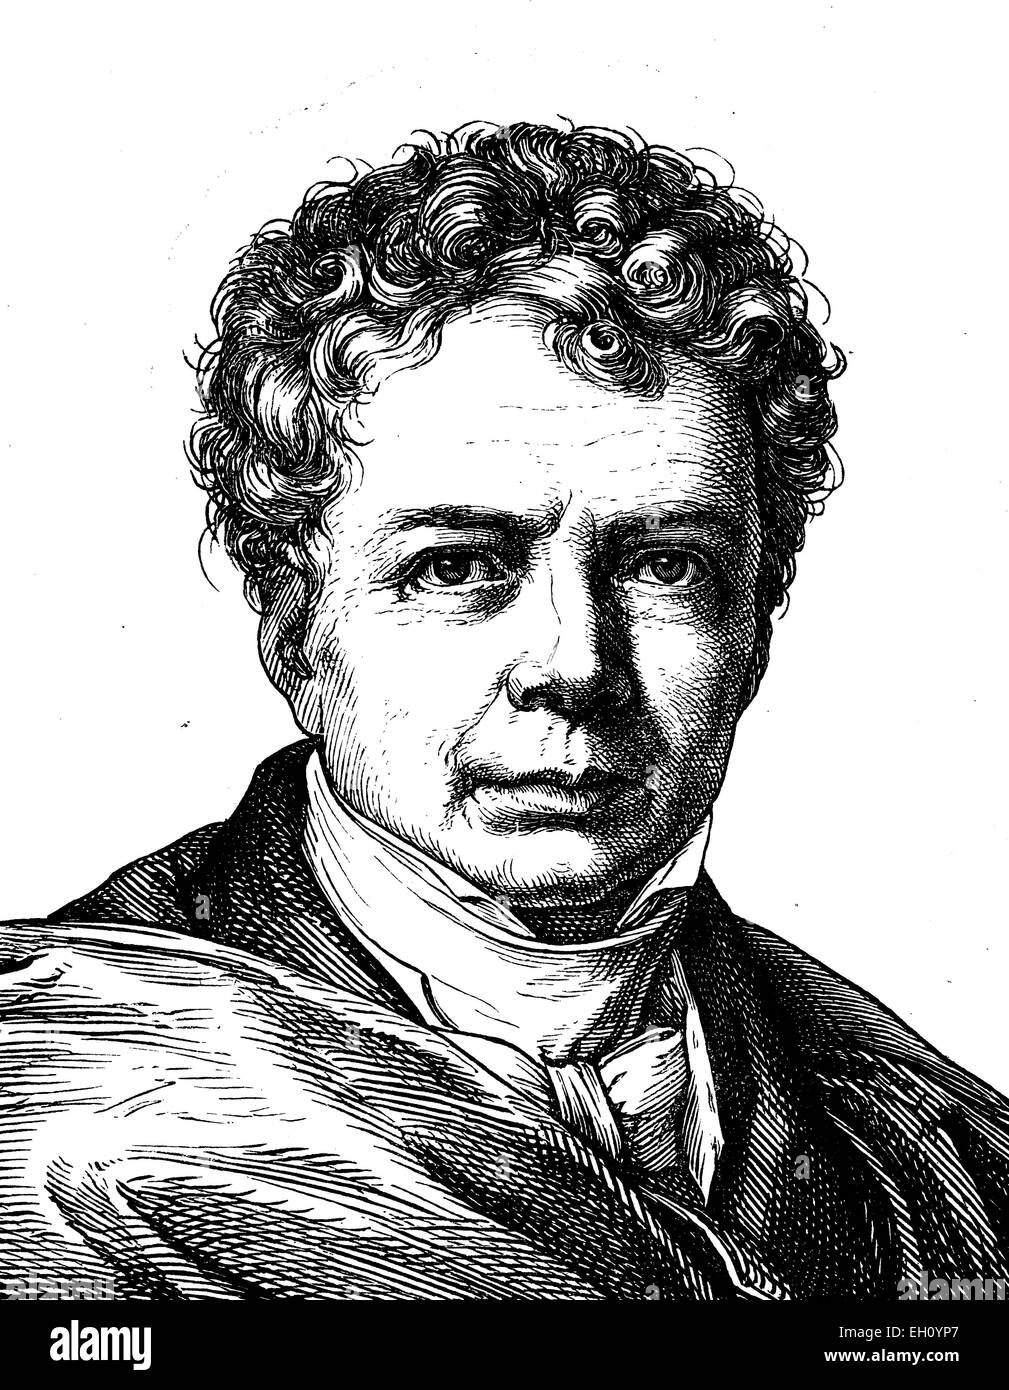 Digital improved image of Friedrich Wilhelm Joseph von Schelling, 1775 - 1854, philosopher, portrait, historical illustration, 1880 Stock Photo